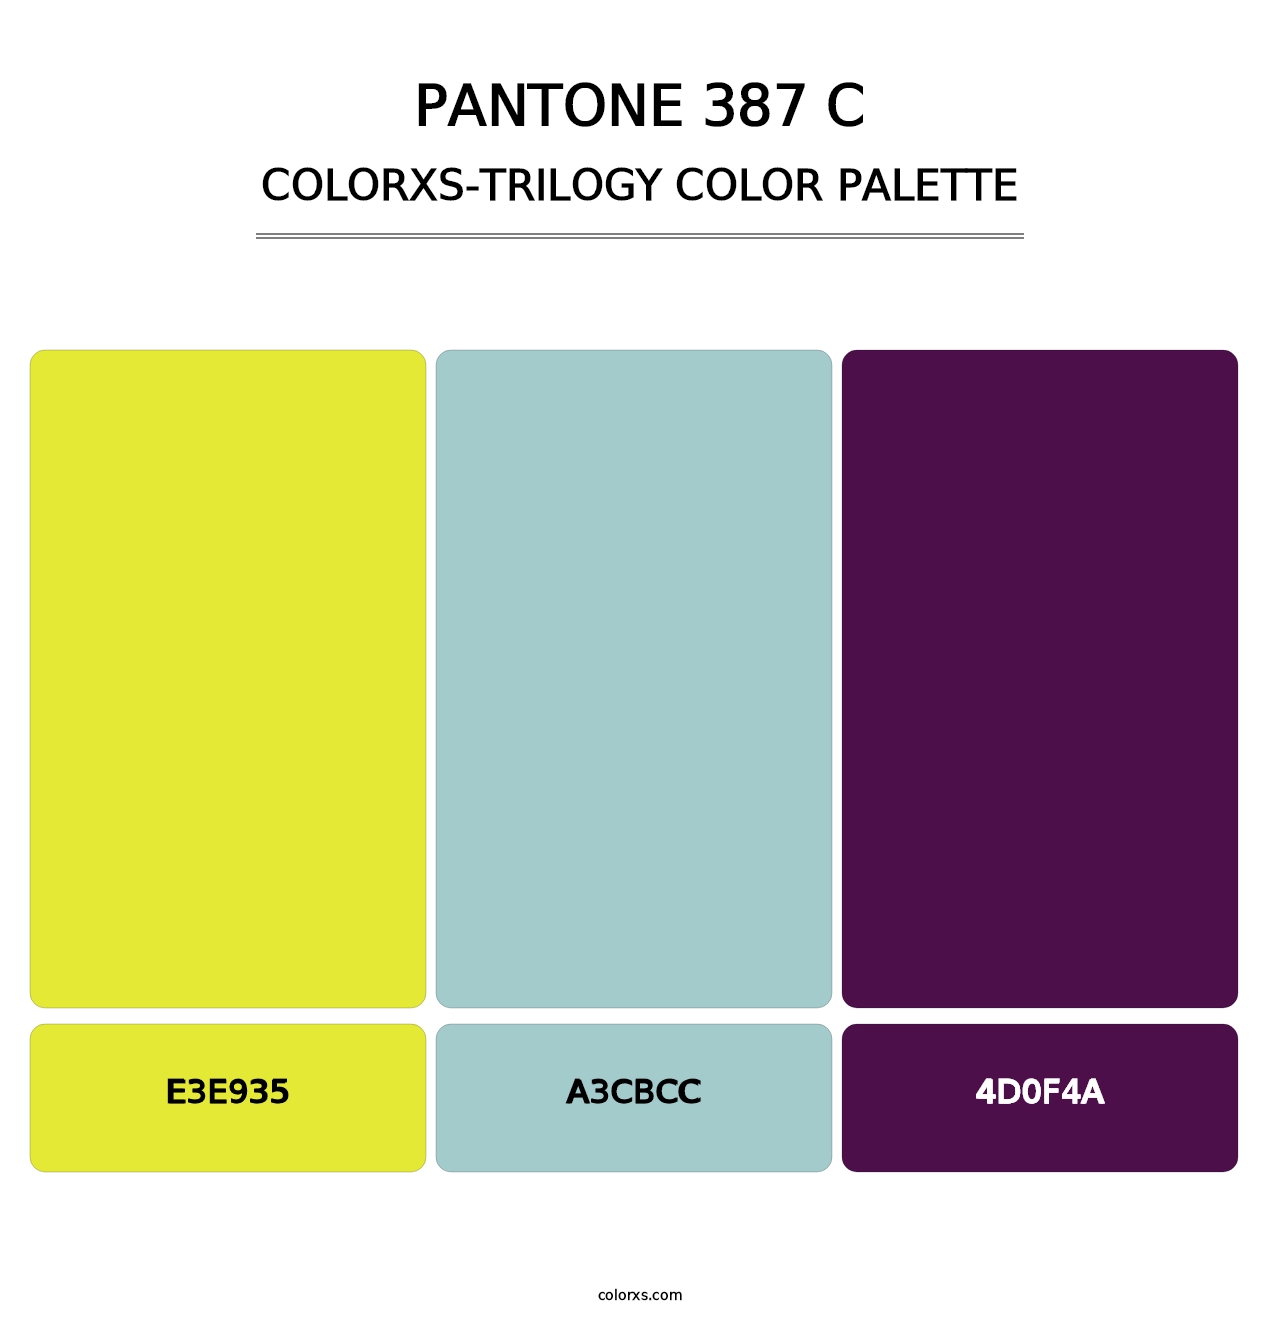 PANTONE 387 C - Colorxs Trilogy Palette